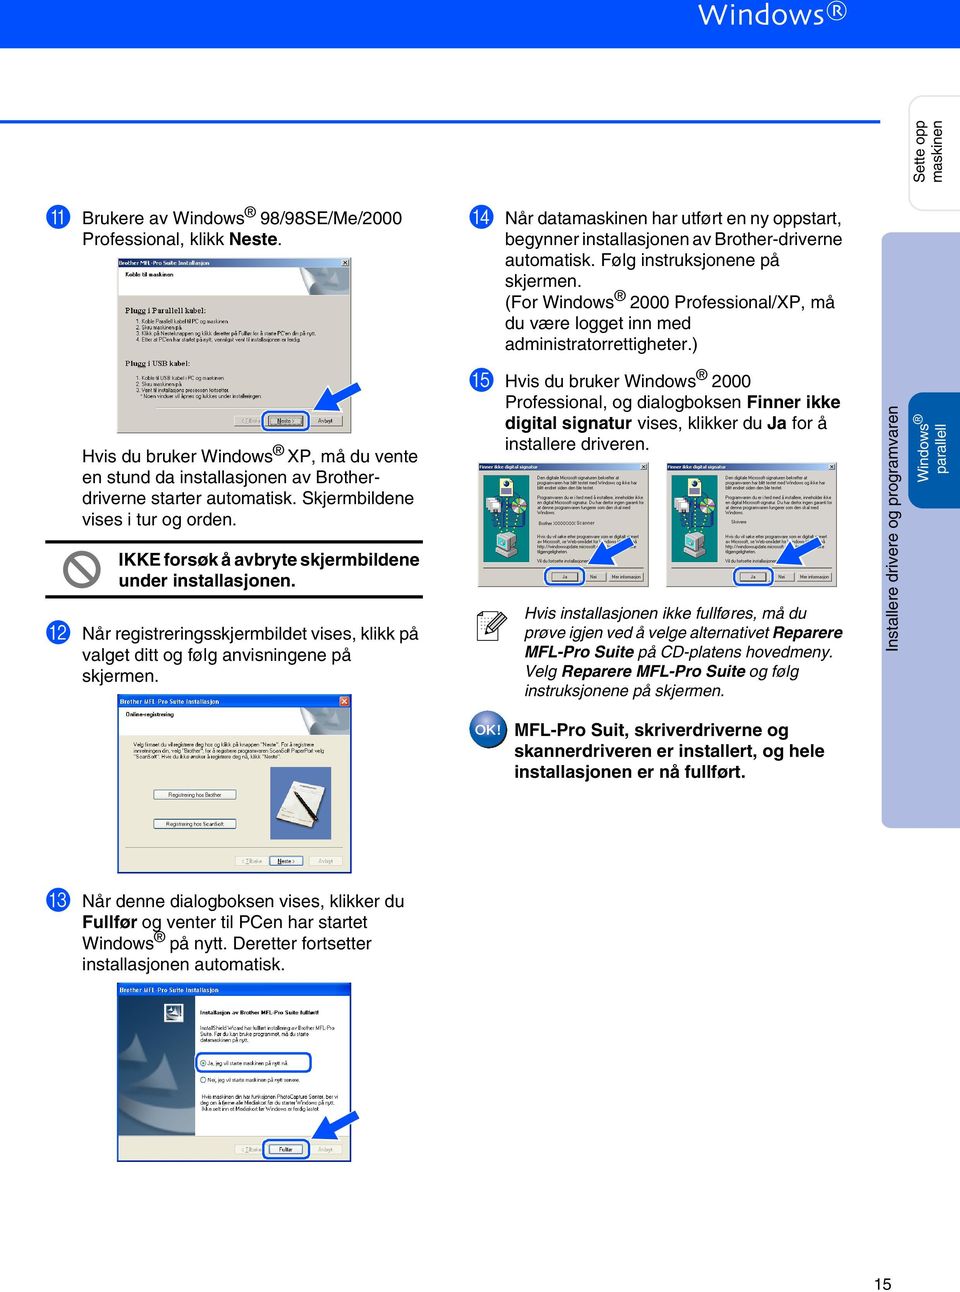 ) E Hvis du bruker Windows 2000 Professional, og dialogboksen Finner ikke digital signatur vises, klikker du Ja for å installere driveren.